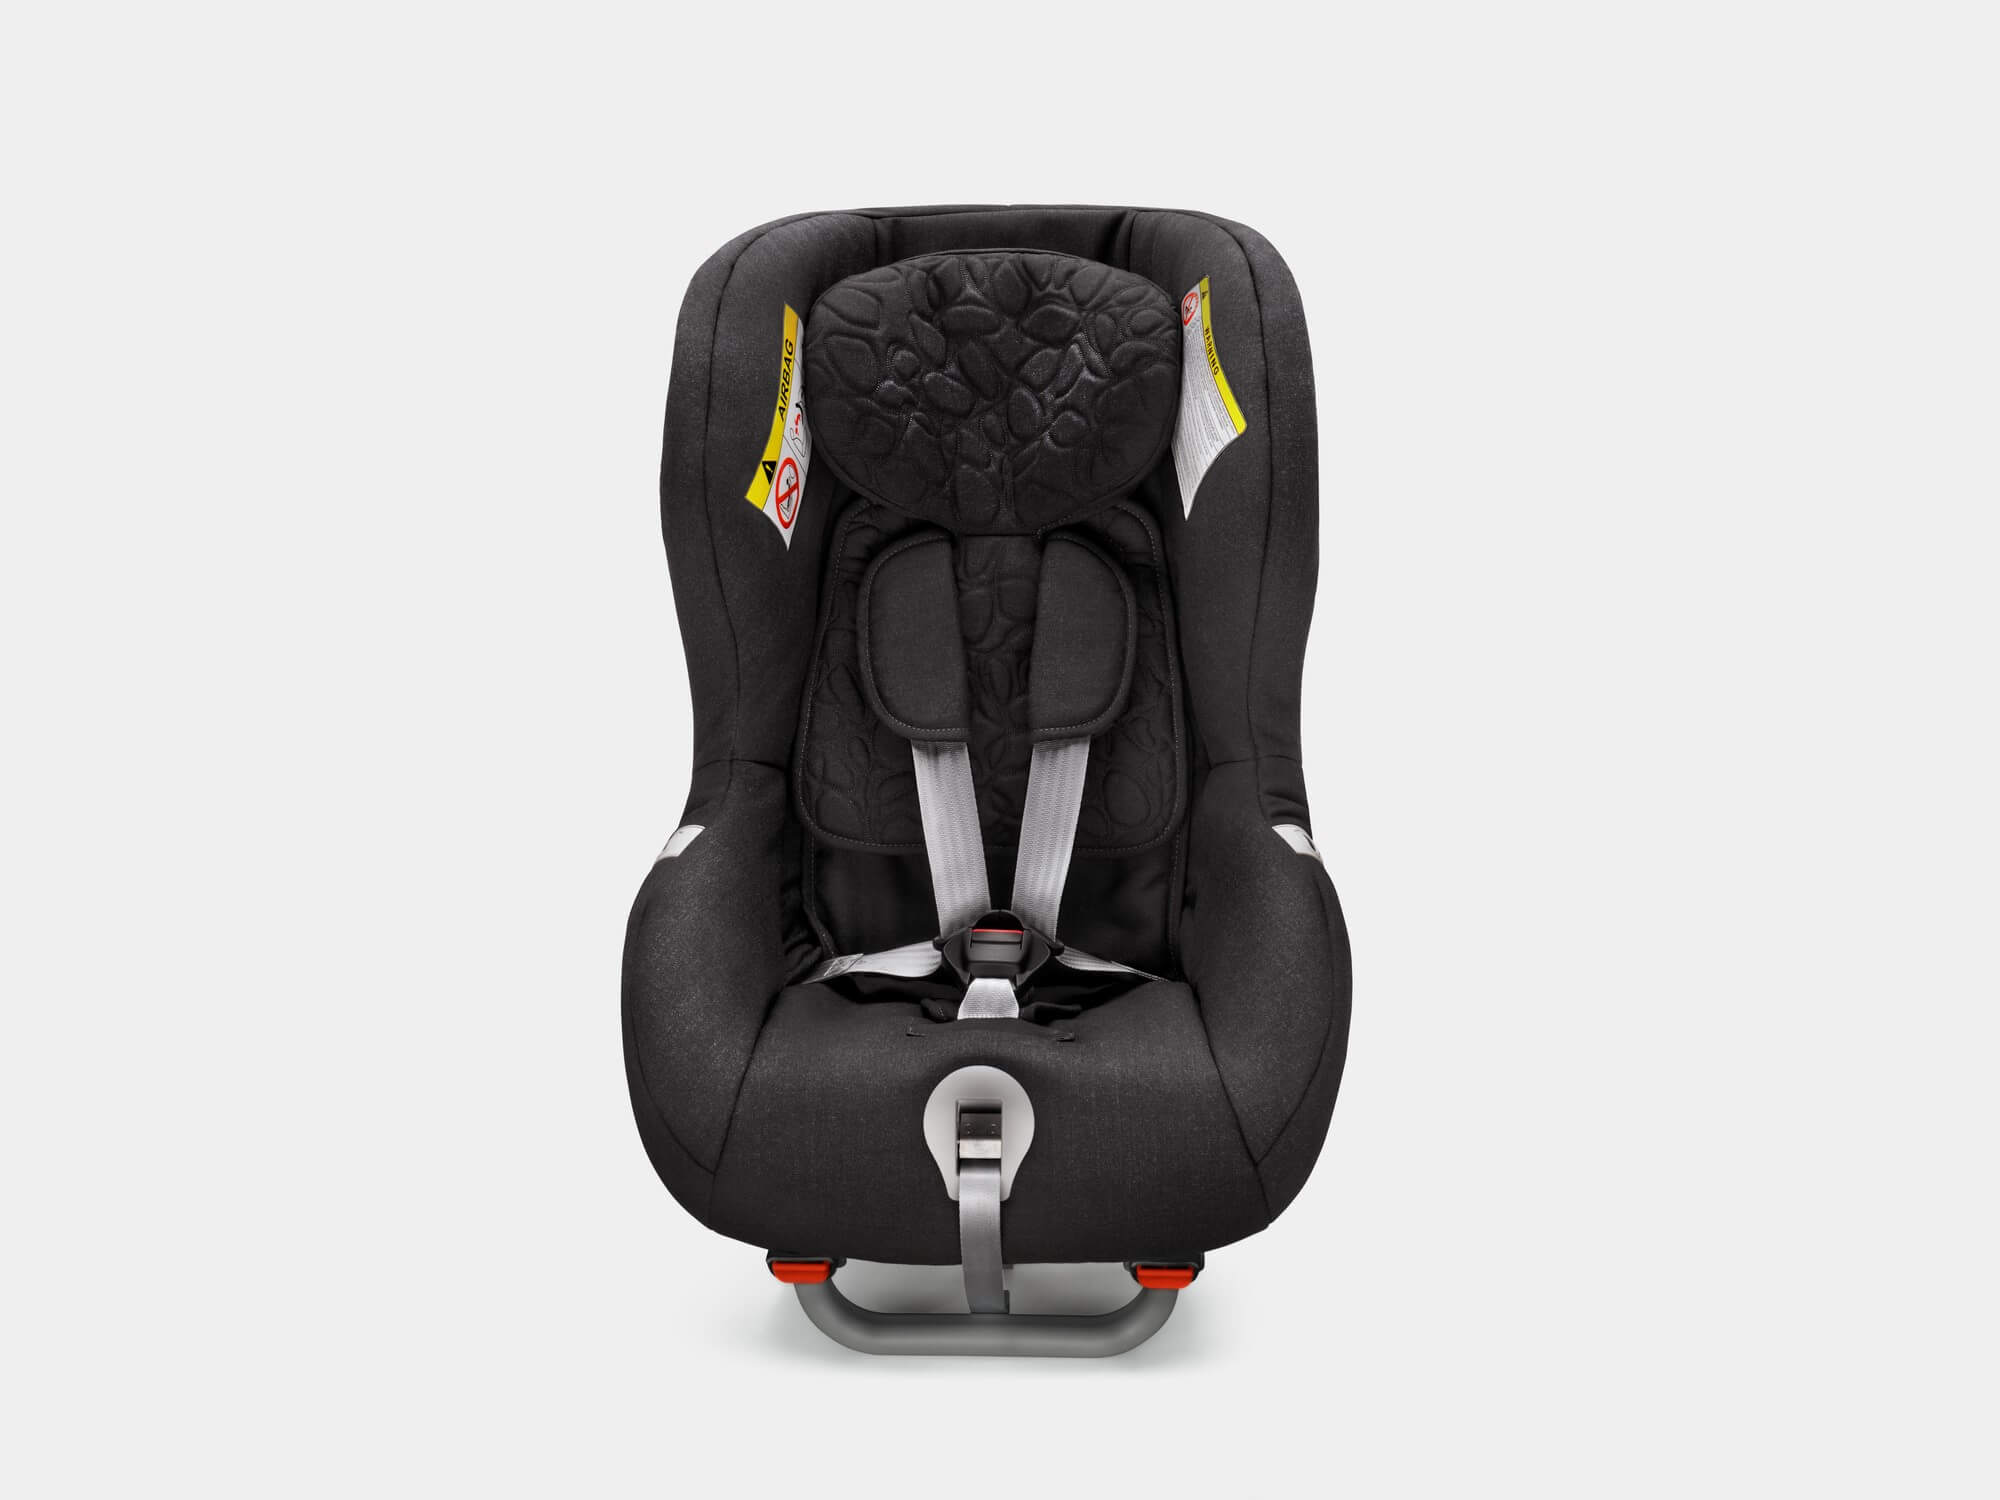 Silla infantil orientada hacia atrás de Volvo, para niños de entre 9 y 25 kg o de 9 meses a 6 años.